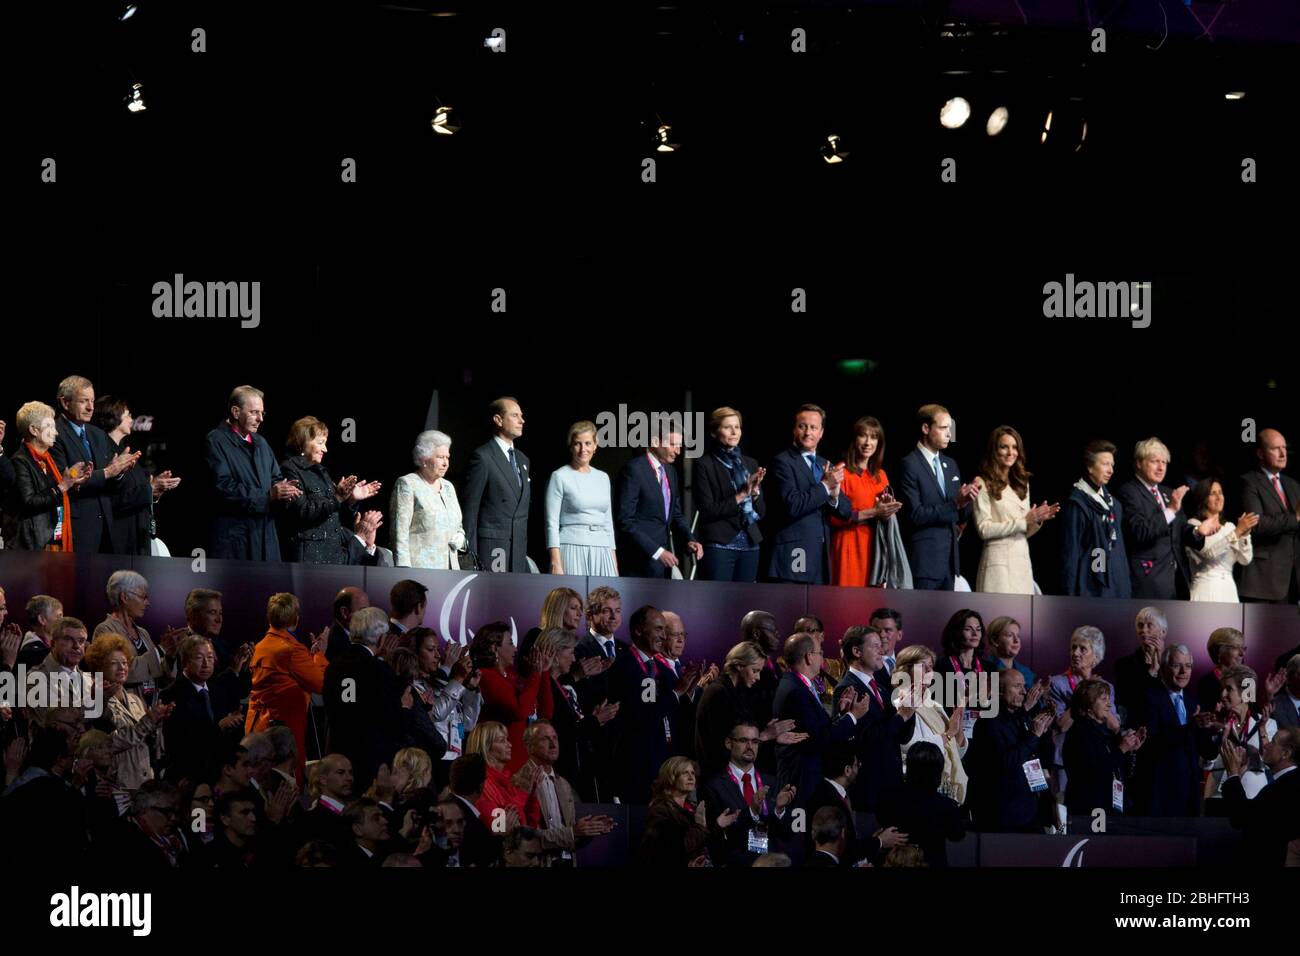 Londres Angleterre, 29 août 2012: La famille royale britannique et le maire de Londres Boris Johnson (à l'extrême droite) Prenez les projecteurs lors des cérémonies d'ouverture des Jeux paralympiques de Londres de 2012. ©Bob Daemmrich Banque D'Images